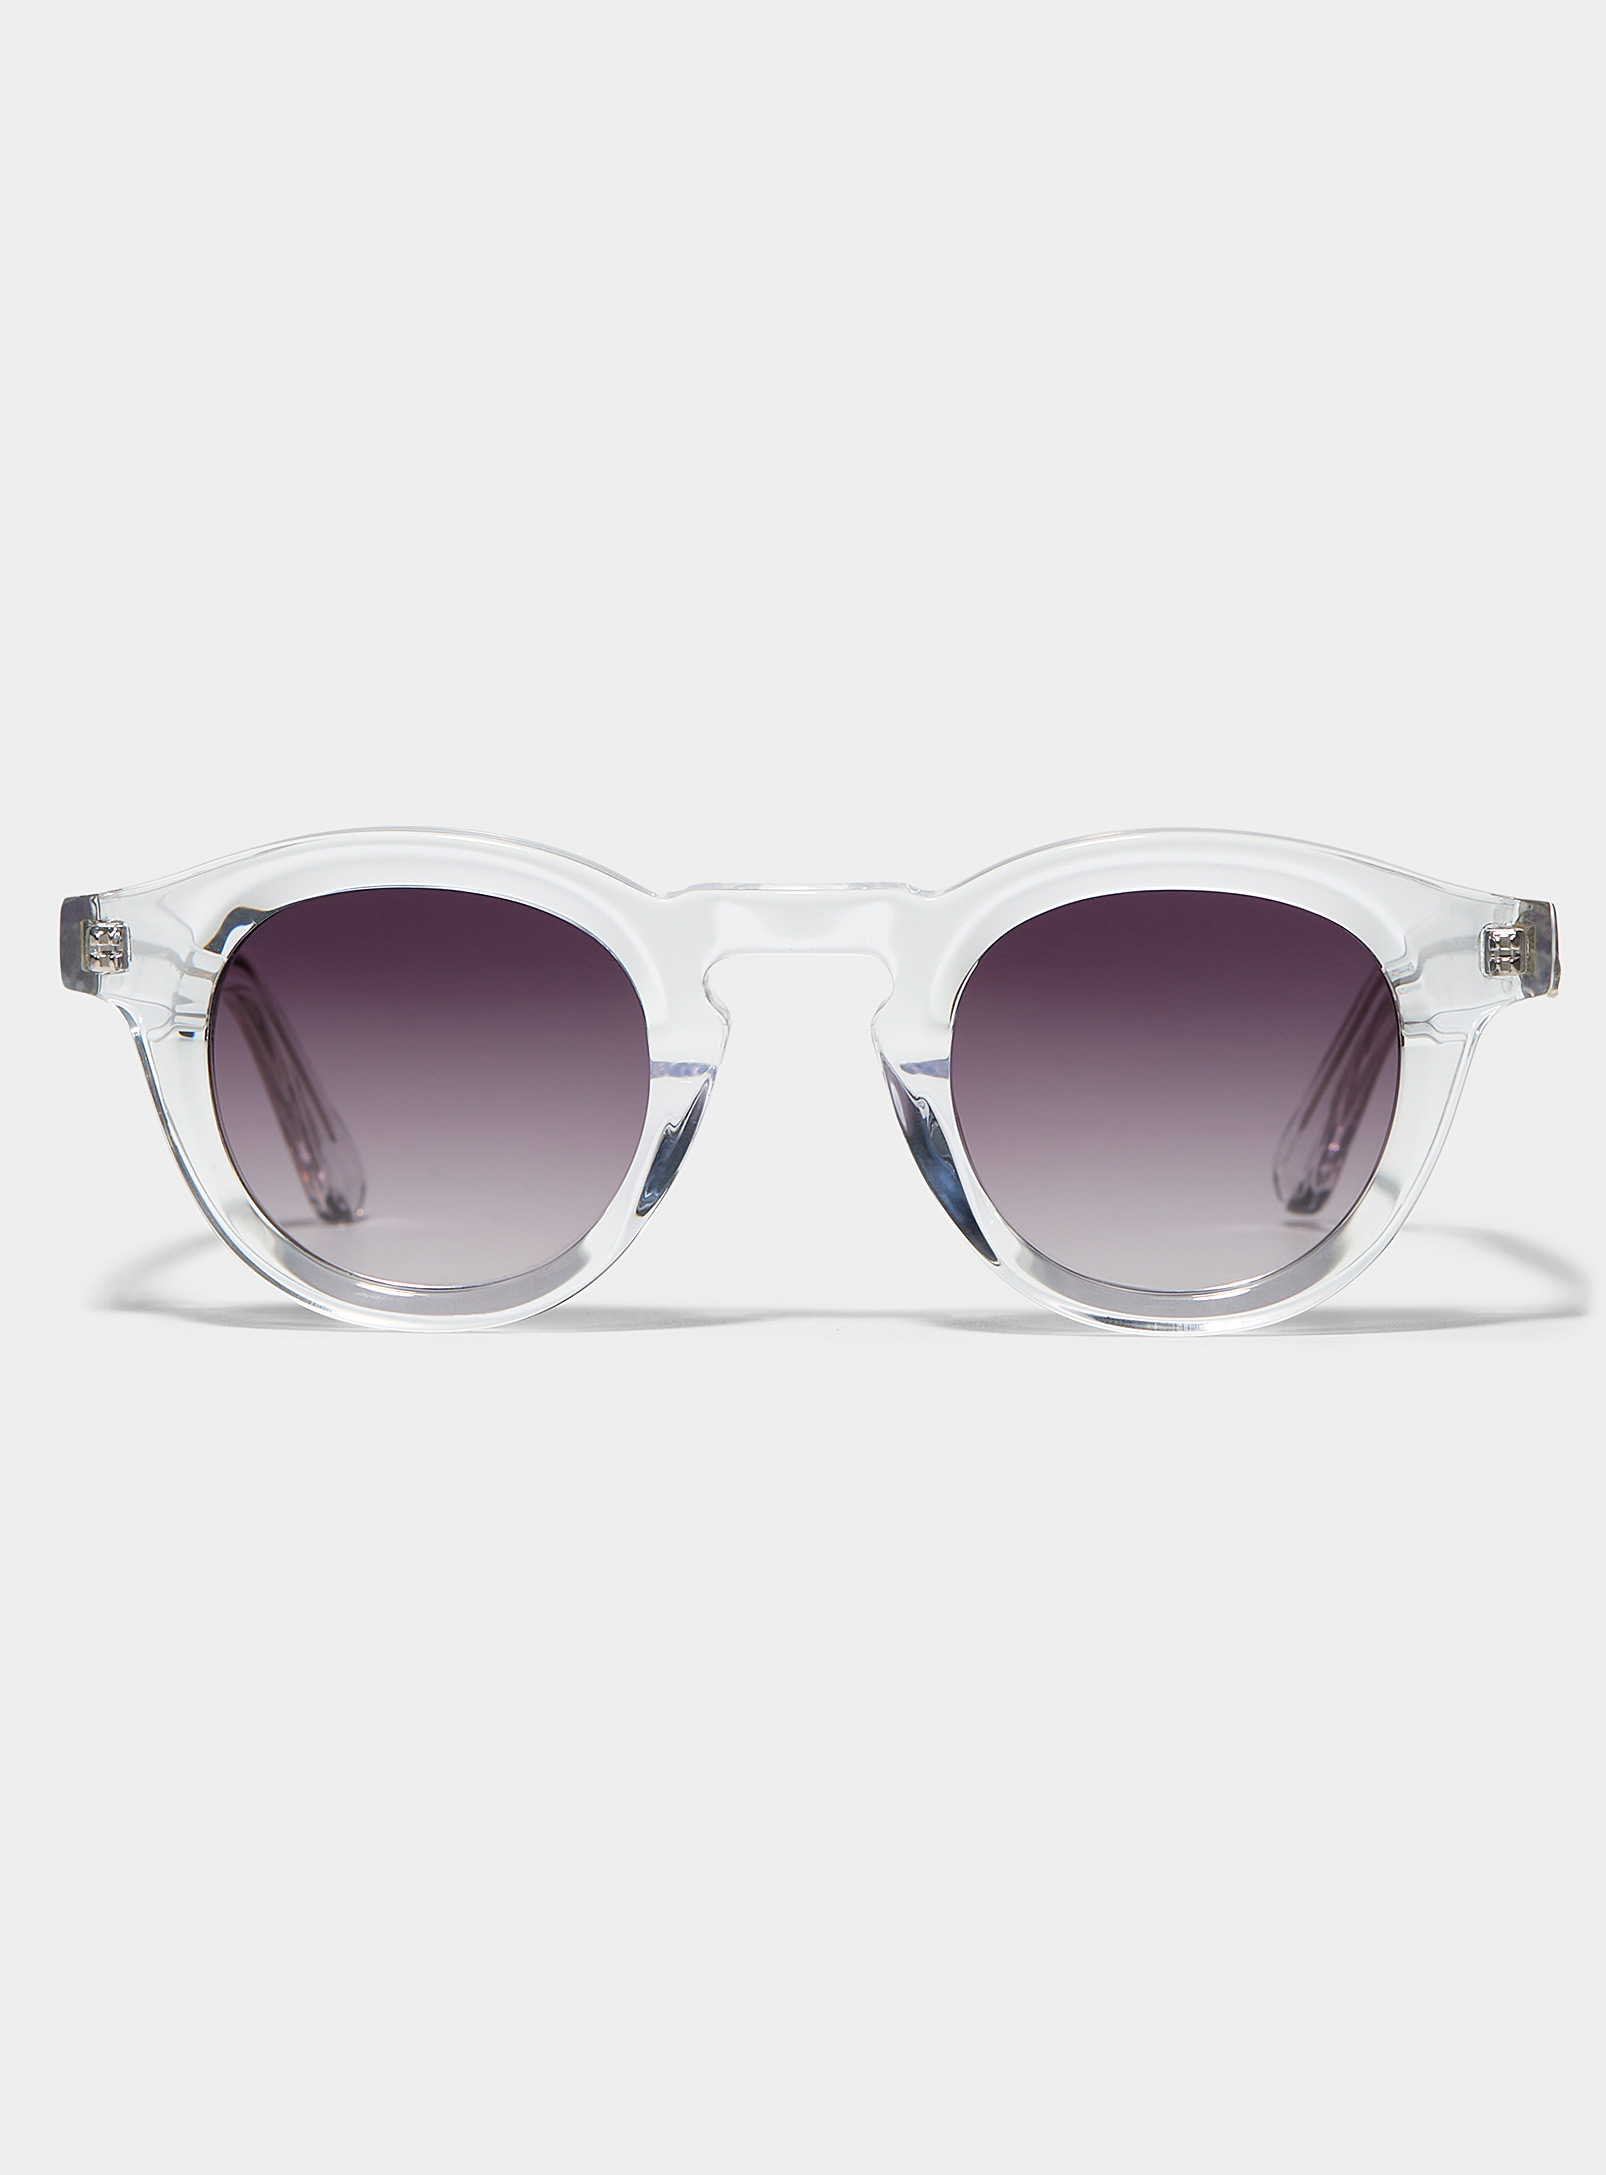 French Kiwis Jude Round Sunglasses In White